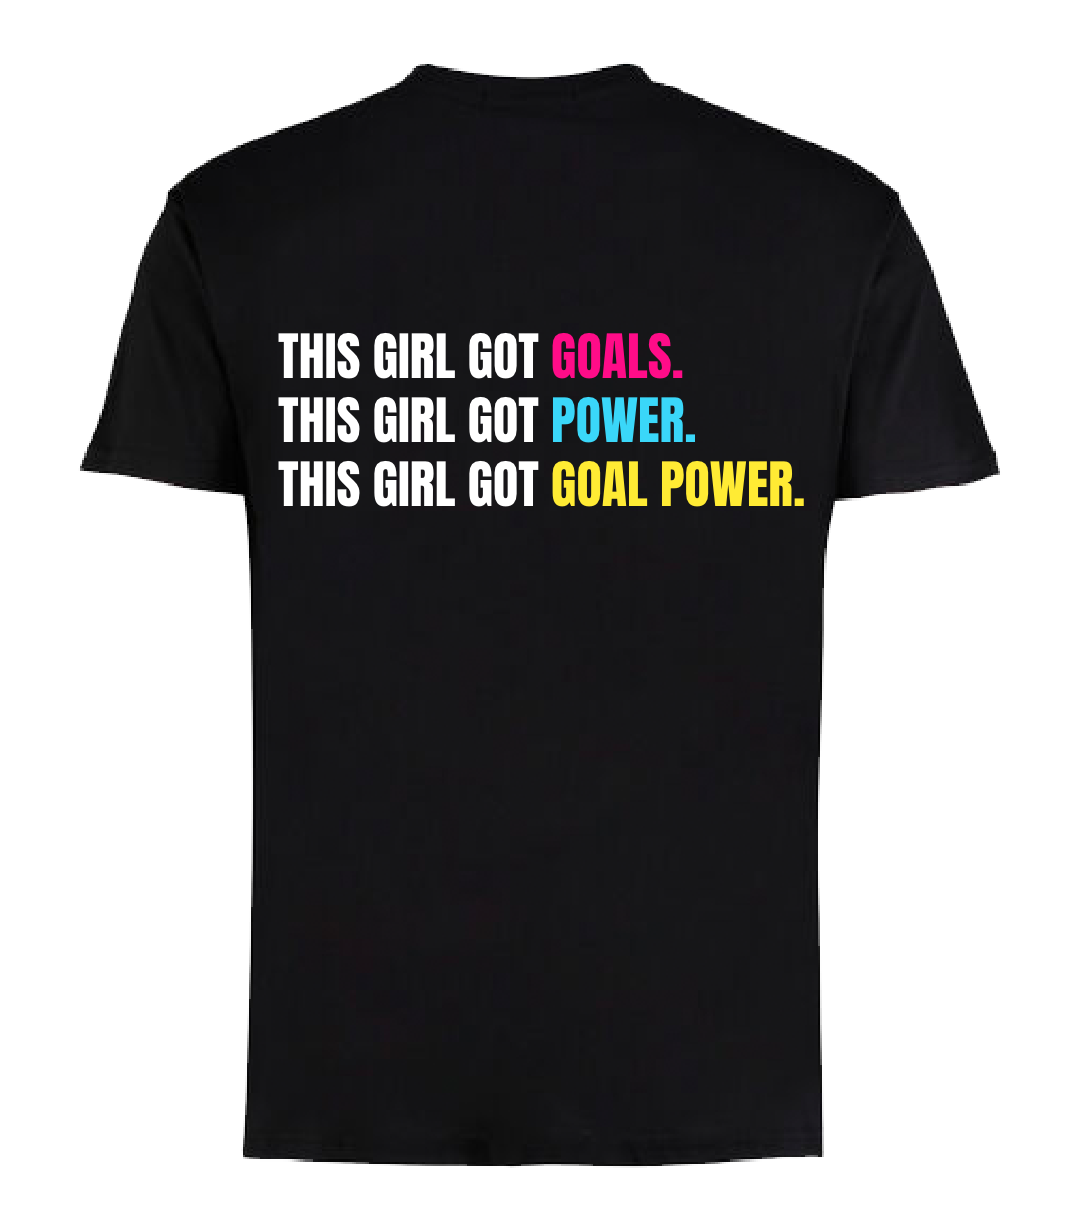 Goal Power - Youth t-shirt - GIRLS GOT@2x